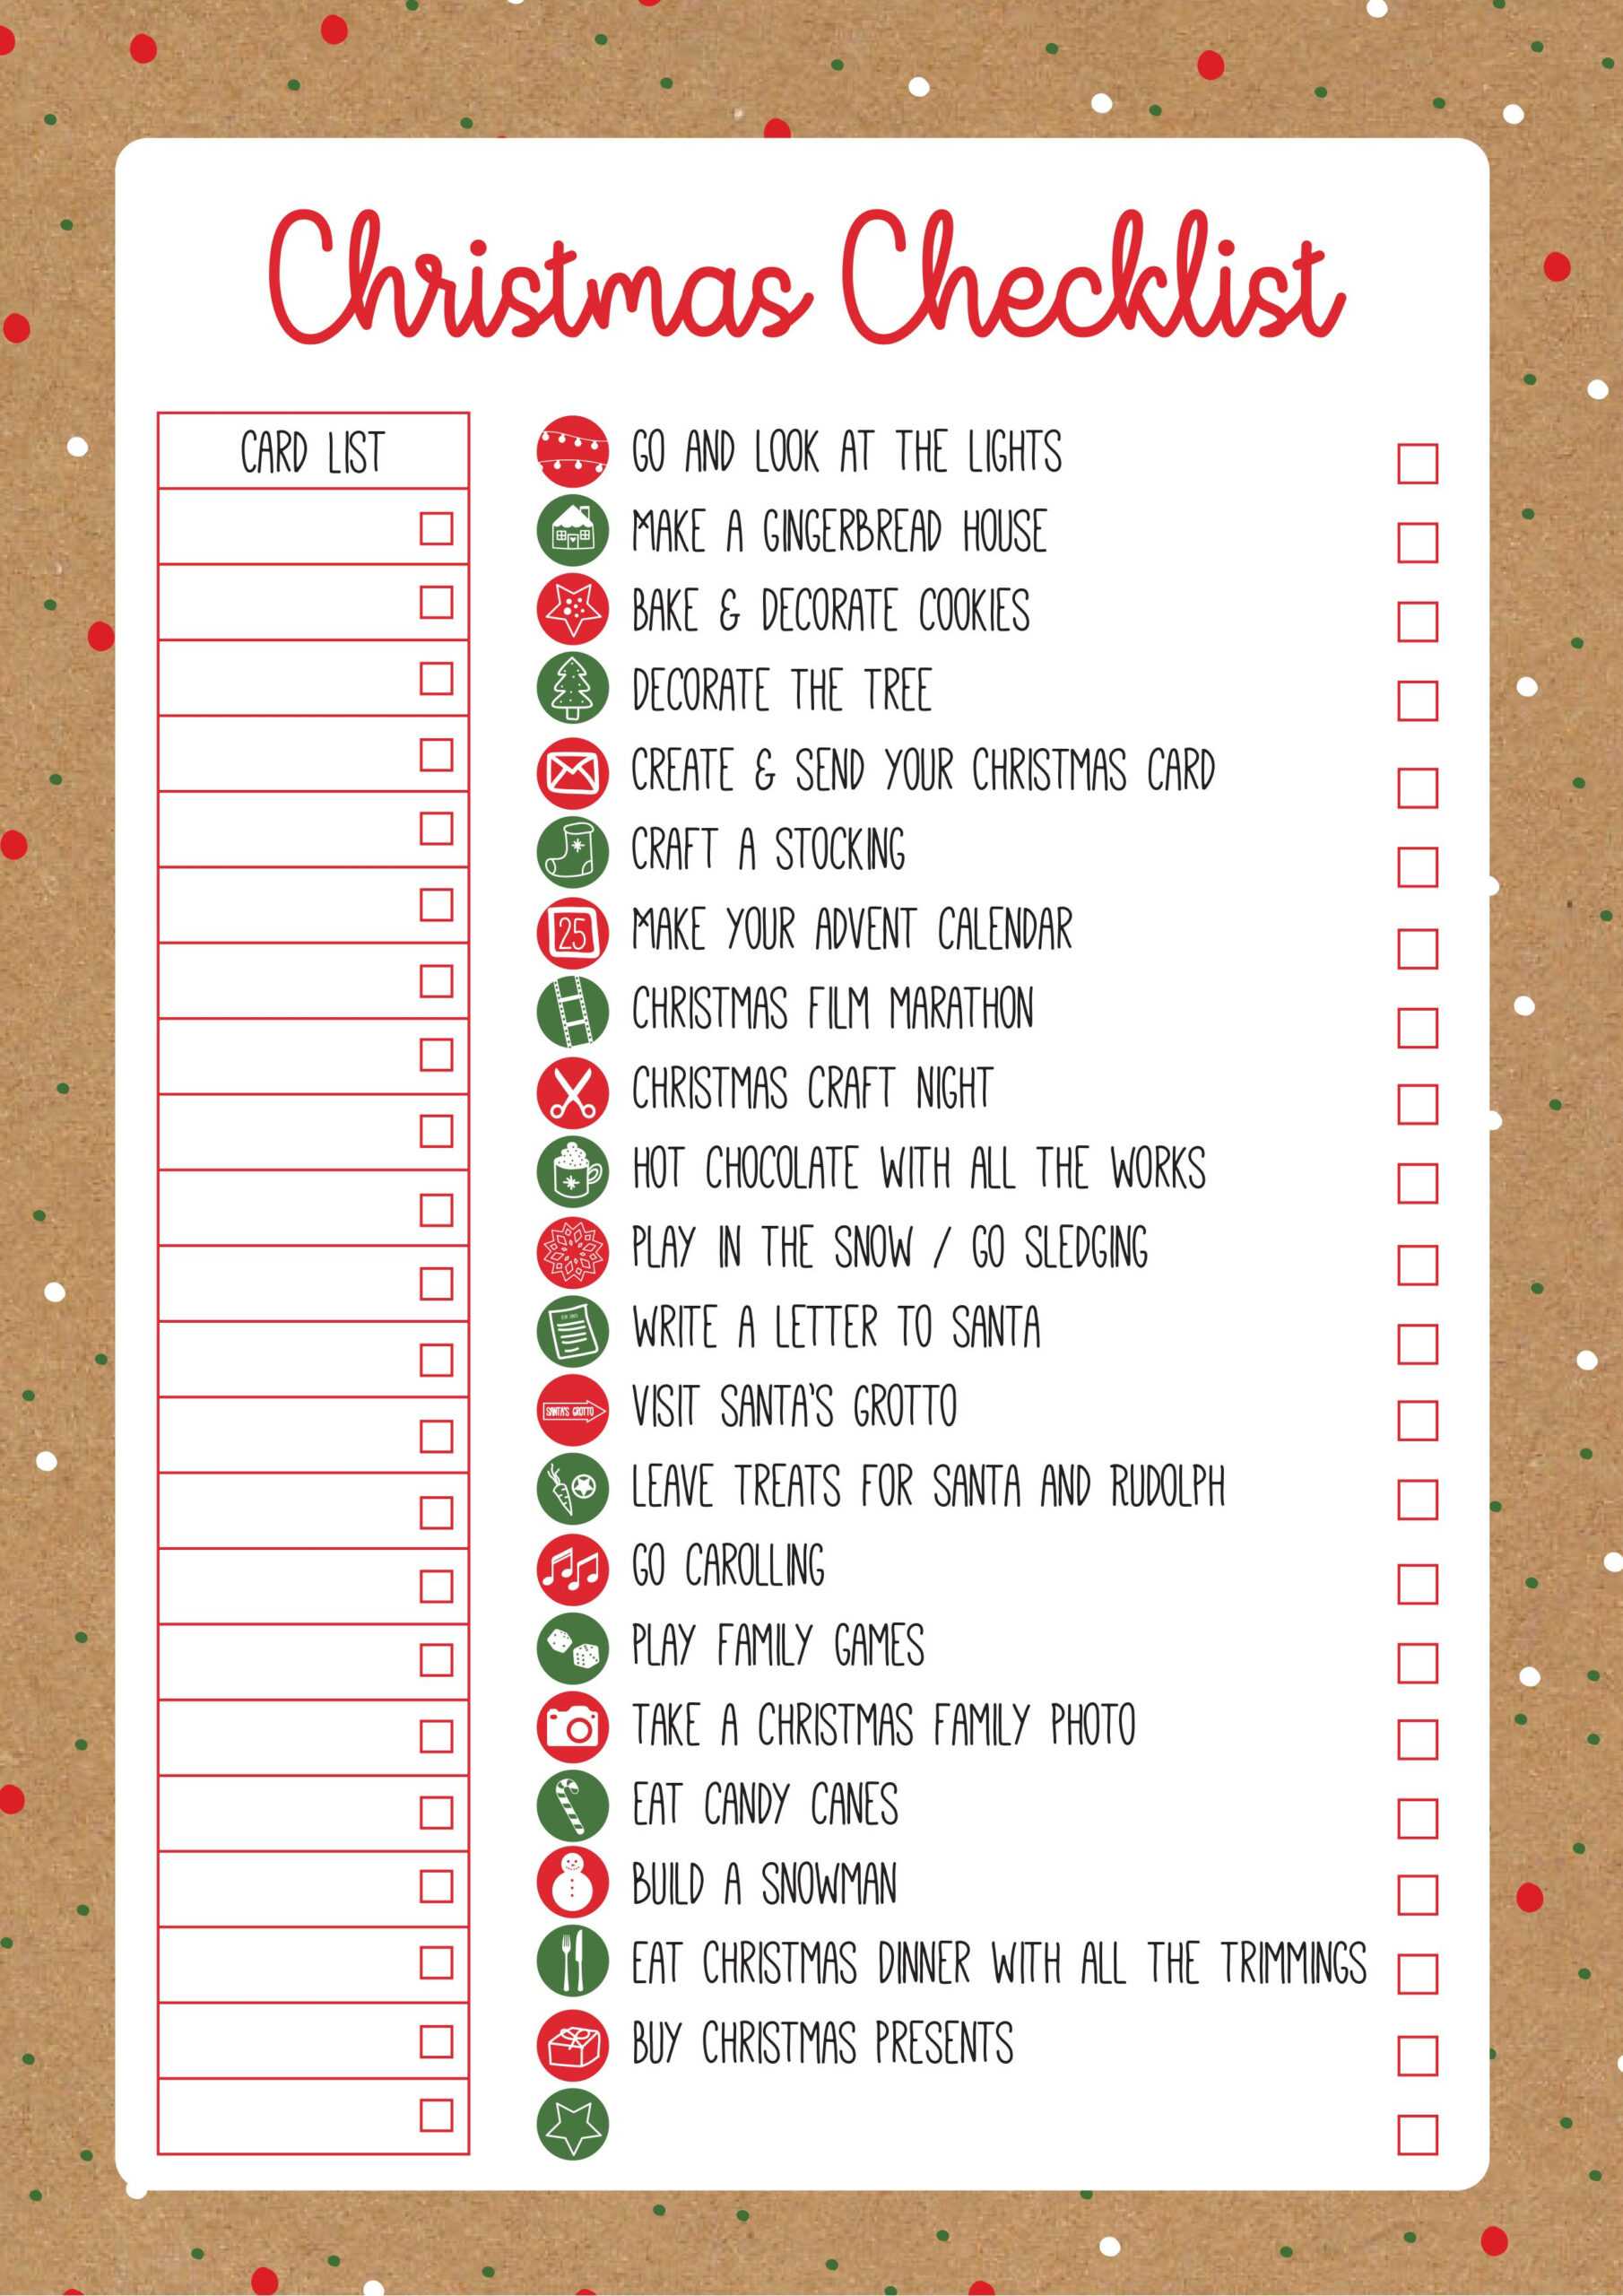 Christmas Checklist Template | Christmas Checklist Inside Christmas Card List Template